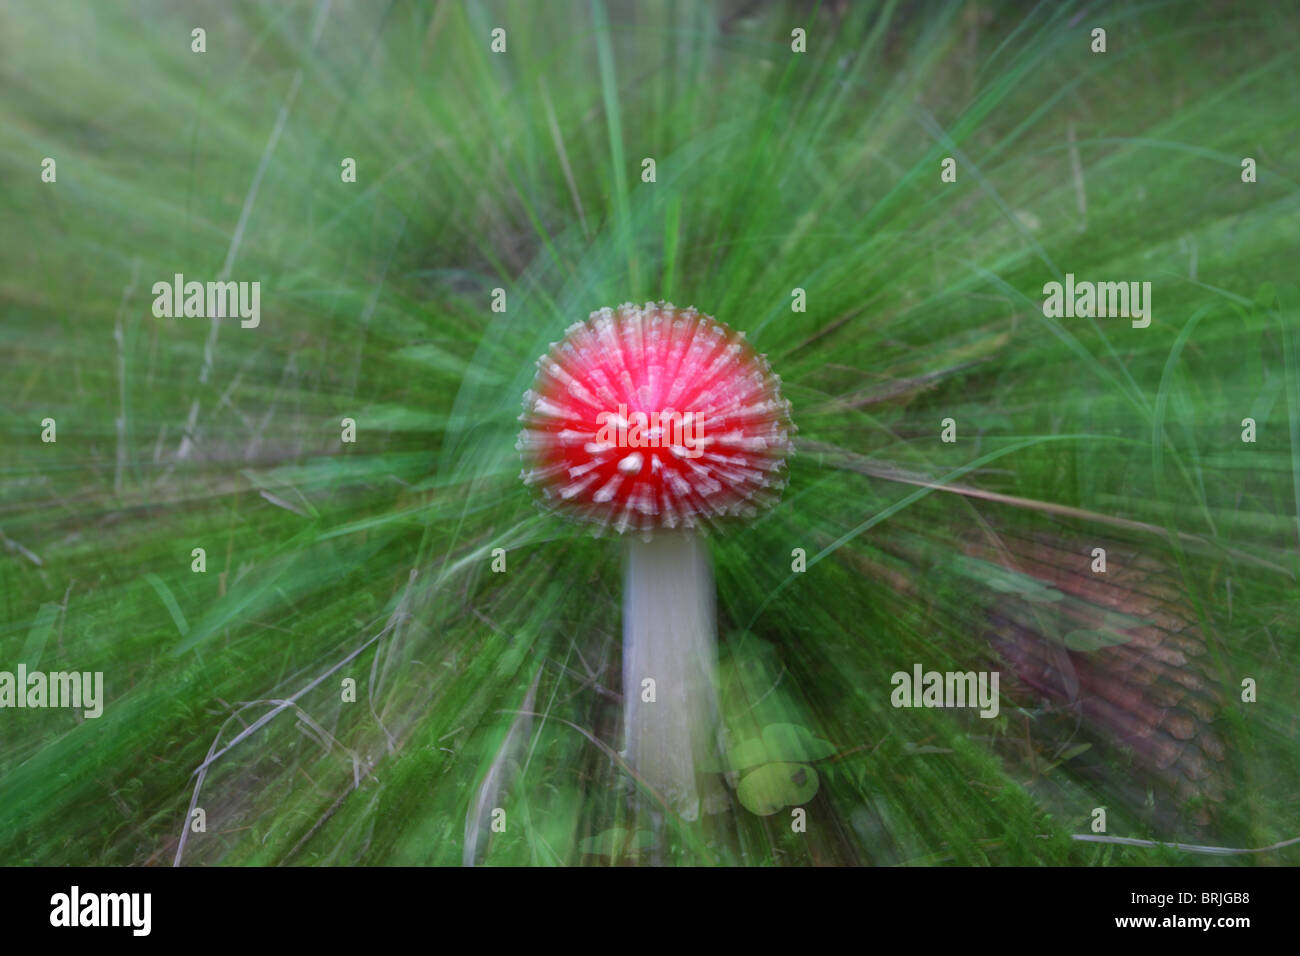 Fliegenpilz Pilz (Amanita Muscaria) das kennen, beide giftig sein und halluzinogene Eigenschaften haben. Stockfoto